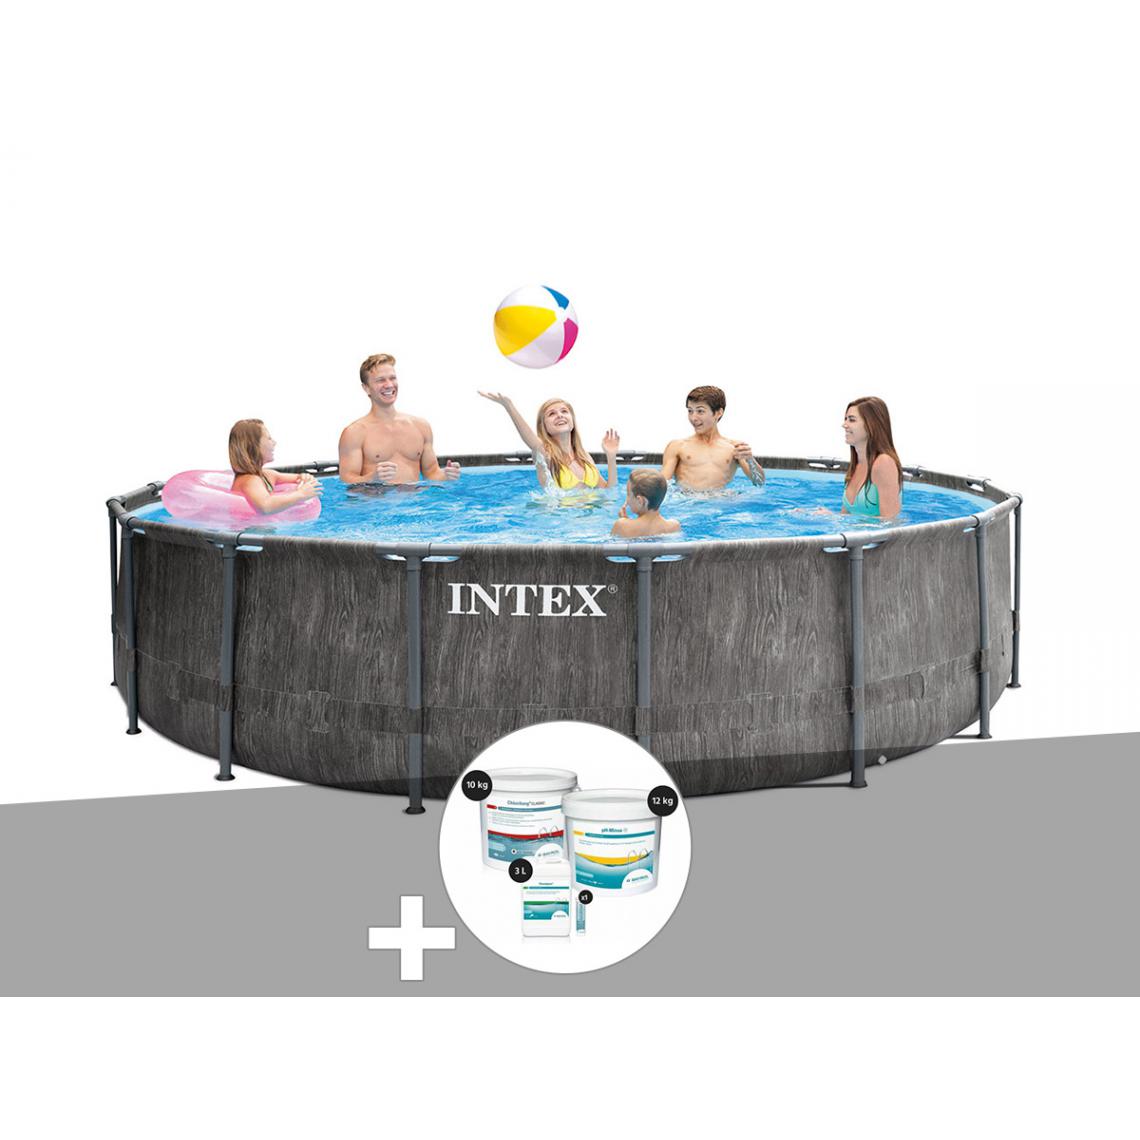 Intex - Kit piscine tubulaire Intex Baltik ronde 5,49 x 1,22 m + Kit de traitement au chlore - Piscine Tubulaire